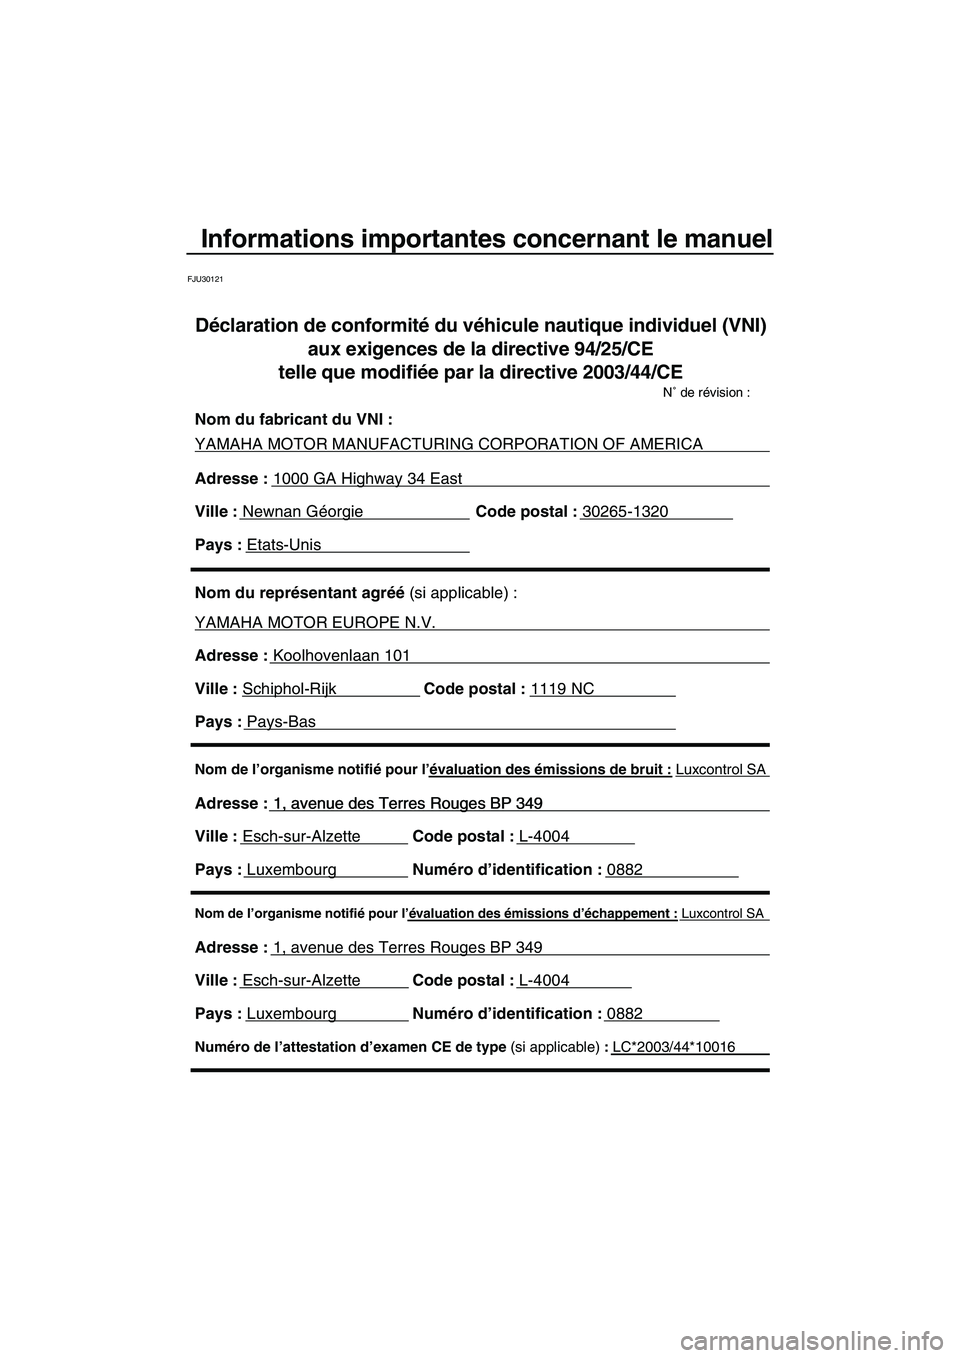 YAMAHA VX DELUXE 2007  Notices Demploi (in French) Informations importantes concernant le manuel
FJU30121
Nom de l’organisme notifié pour l’évaluation des émissions d’échappement : Luxcontrol SA
Adresse : 1, avenue des Terres Rouges BP 349 
